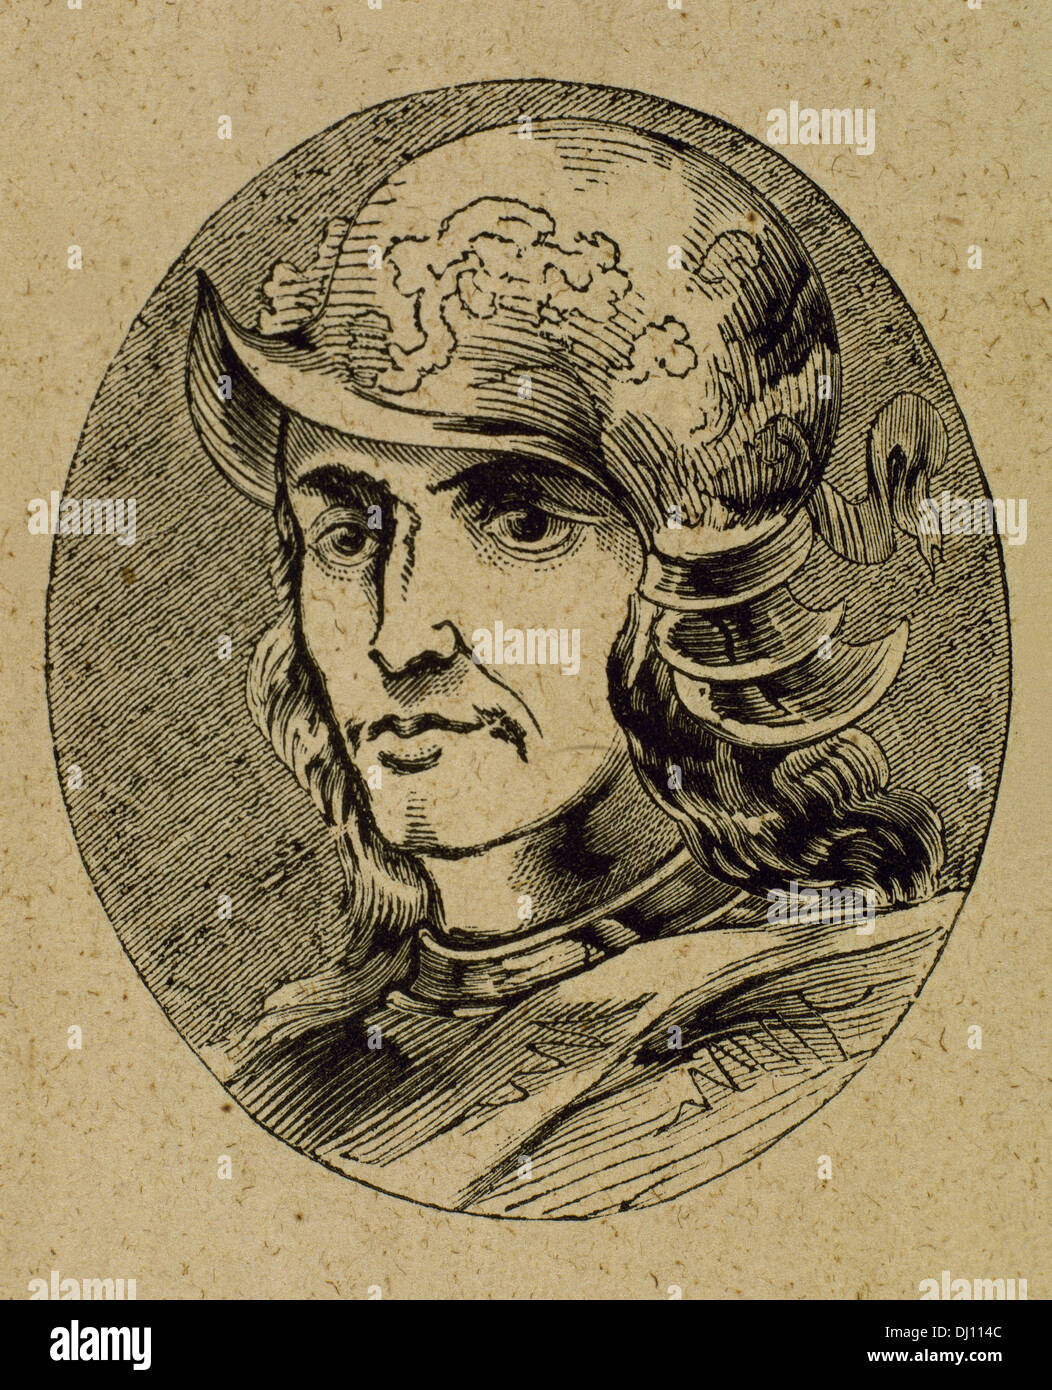 Enrique III (1379-1406). Conocido como Henry el Sufriente o Enrique el enfermo. El rey de la Corona de Castilla. Grabado. Foto de stock